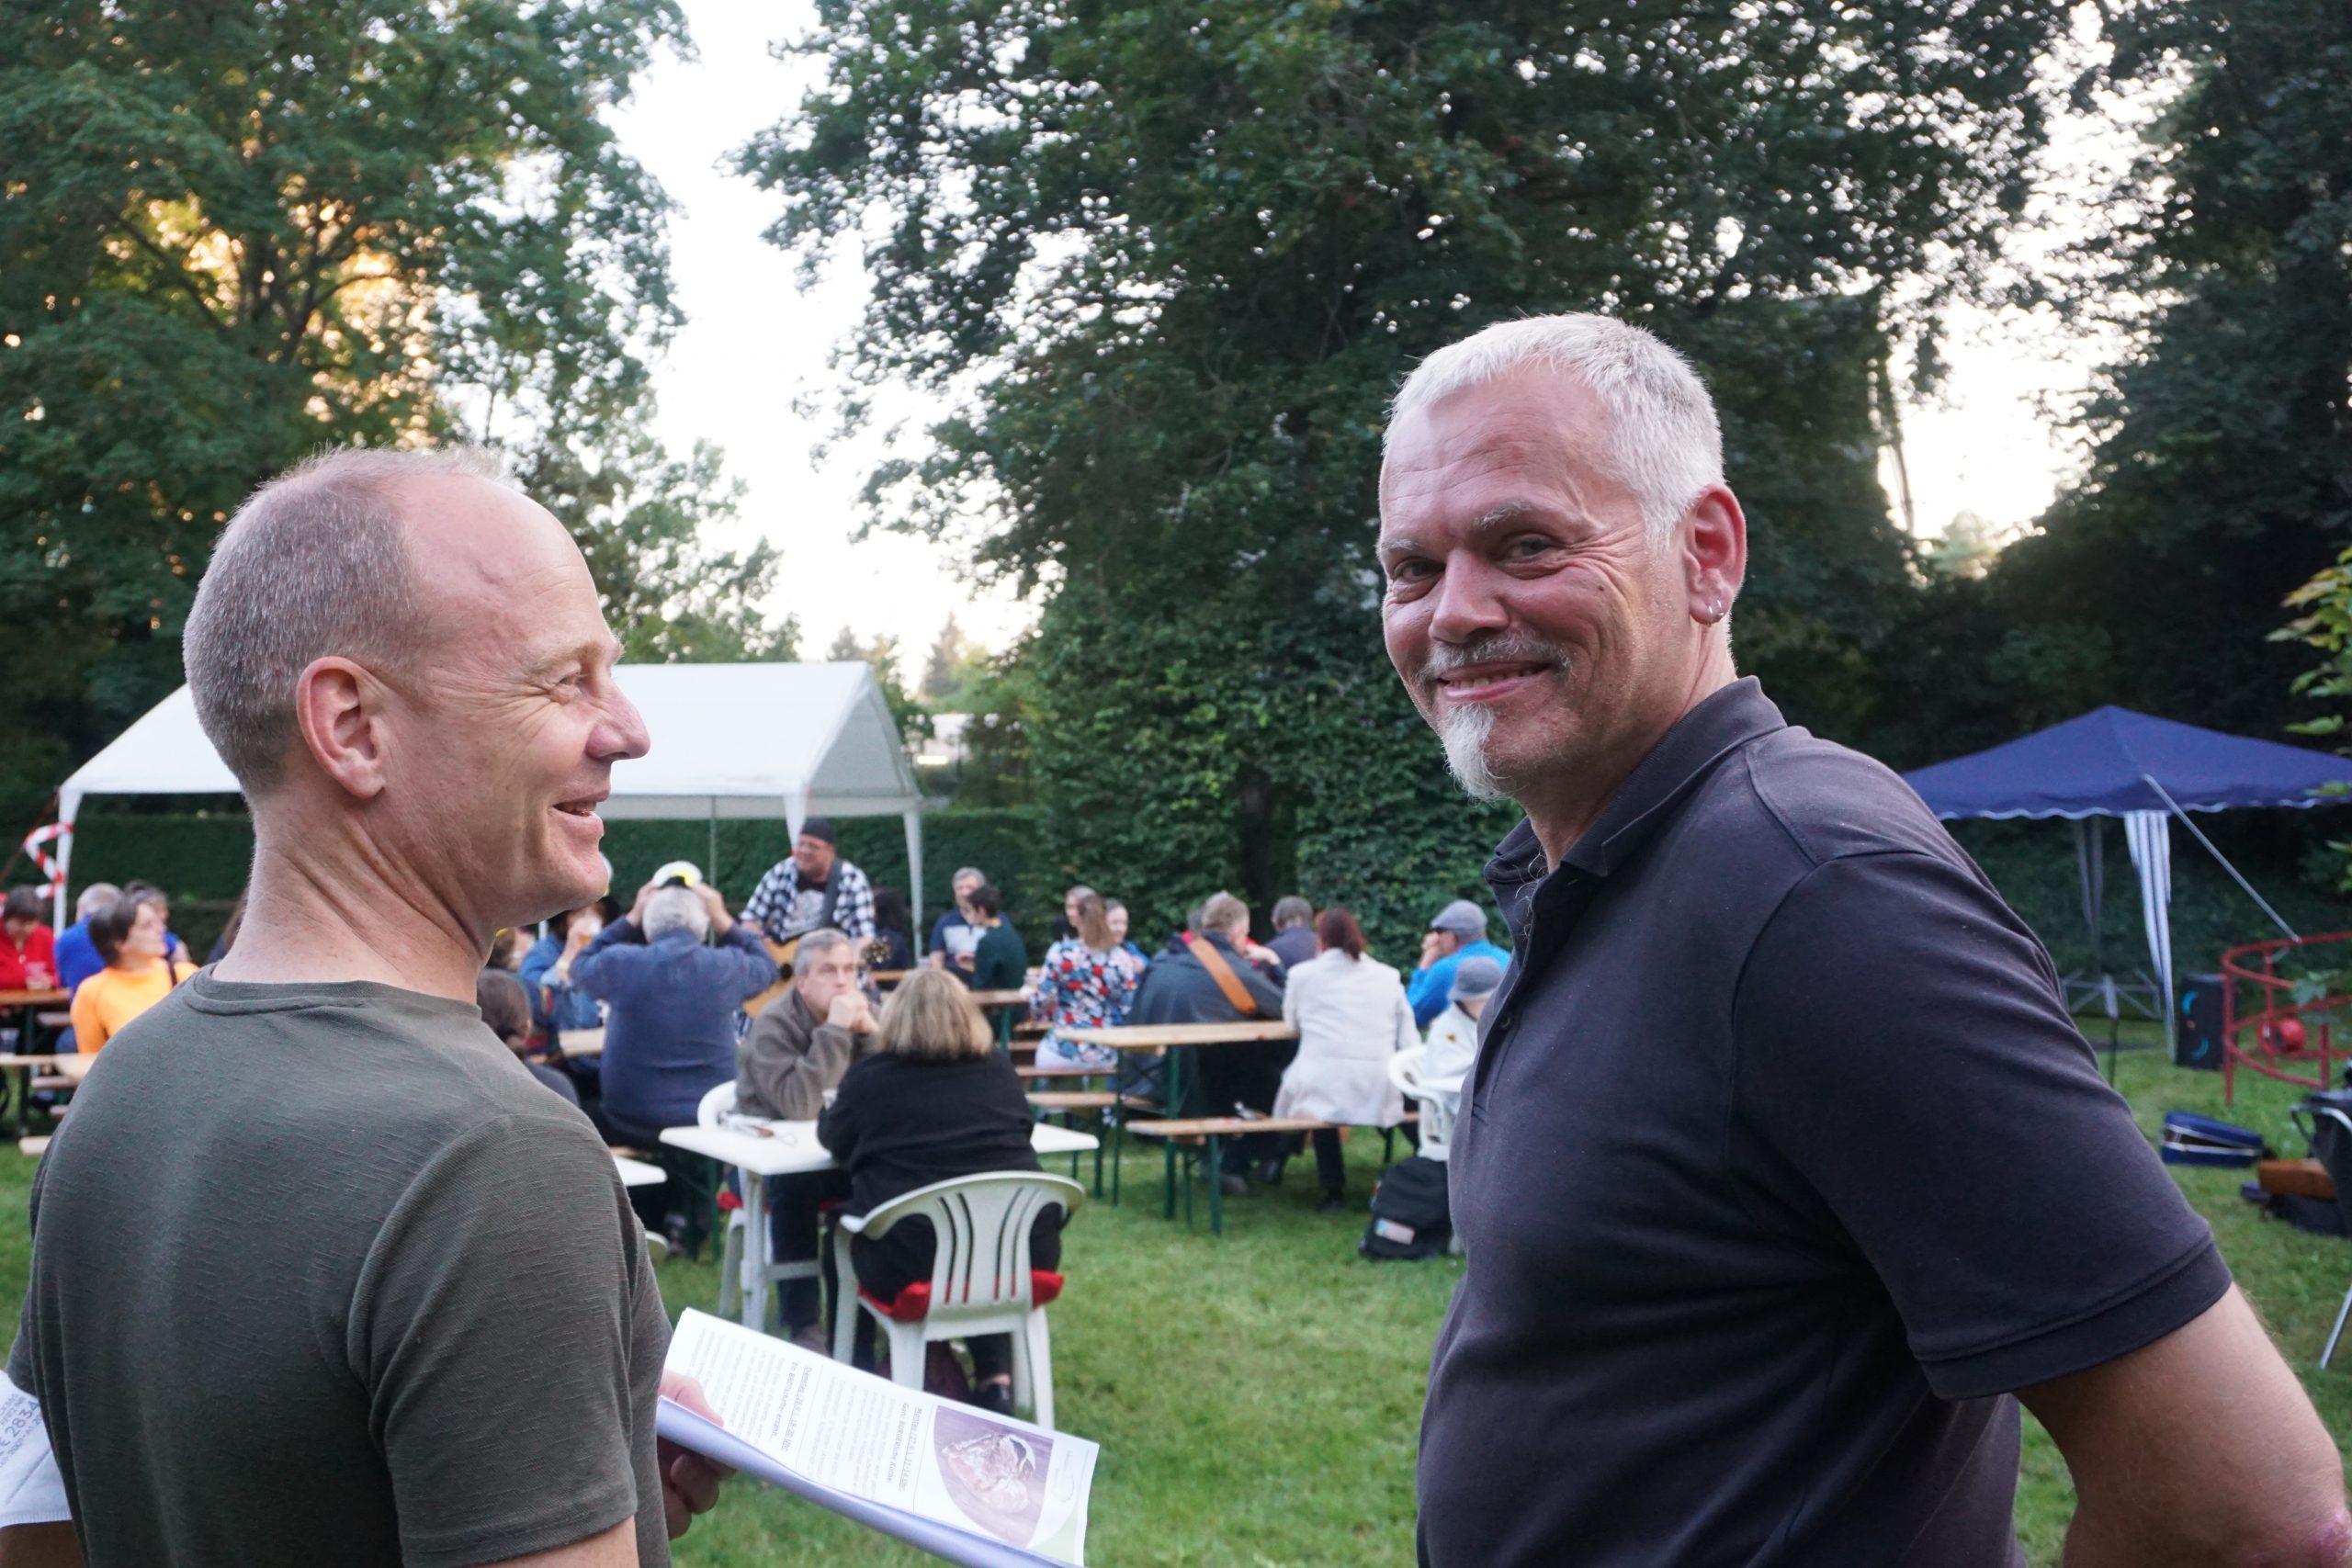 Herr Zehe (links) und Herr Ittner (rechts) stehen draußen und lächeln. im Hintergrund befinden sich Menschen, die an Bierbänken sitzen.